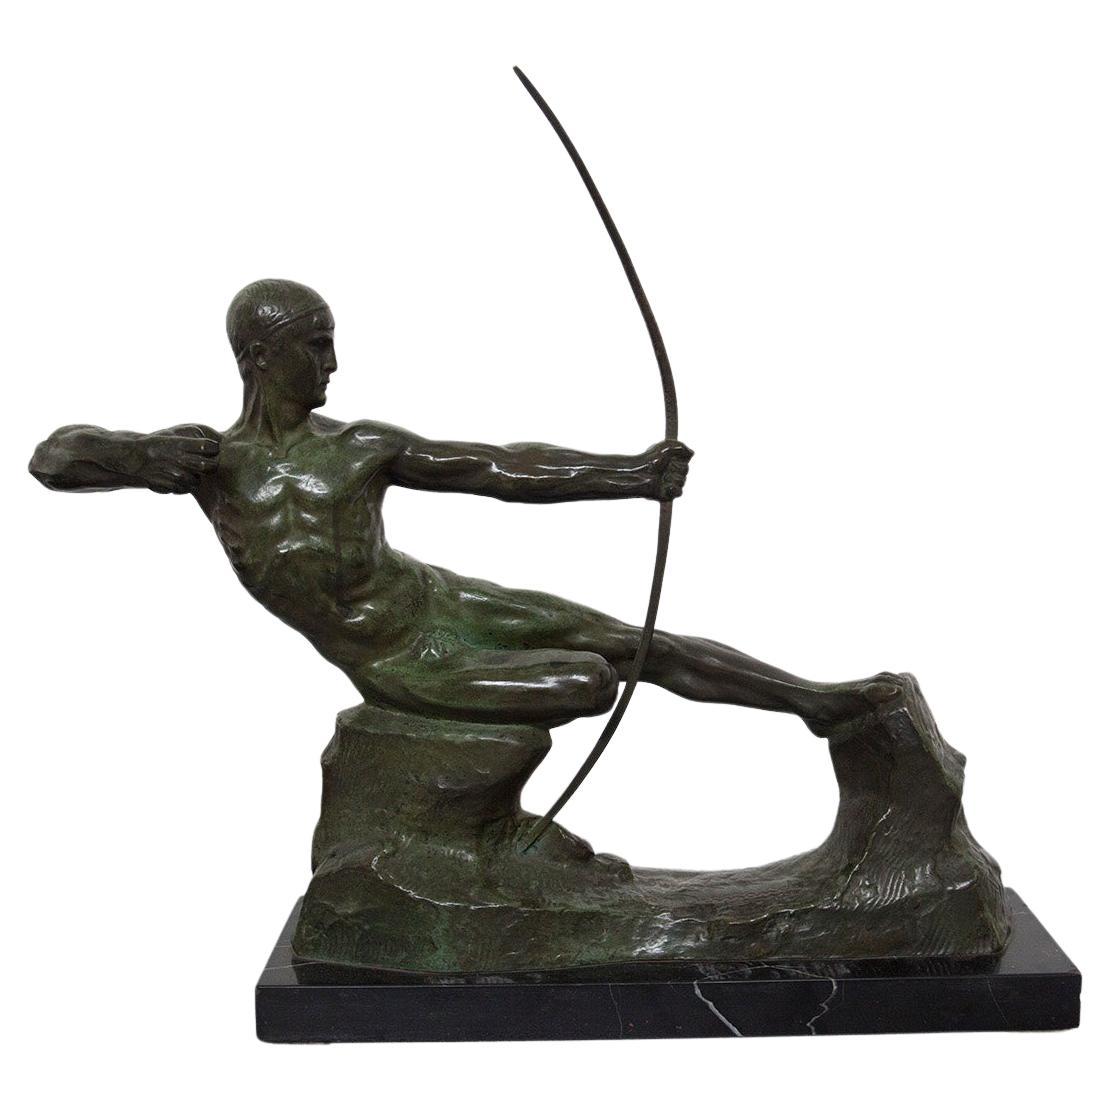 Victor Demanet Skulptur "der Archer" in Bronze, signiert 1925